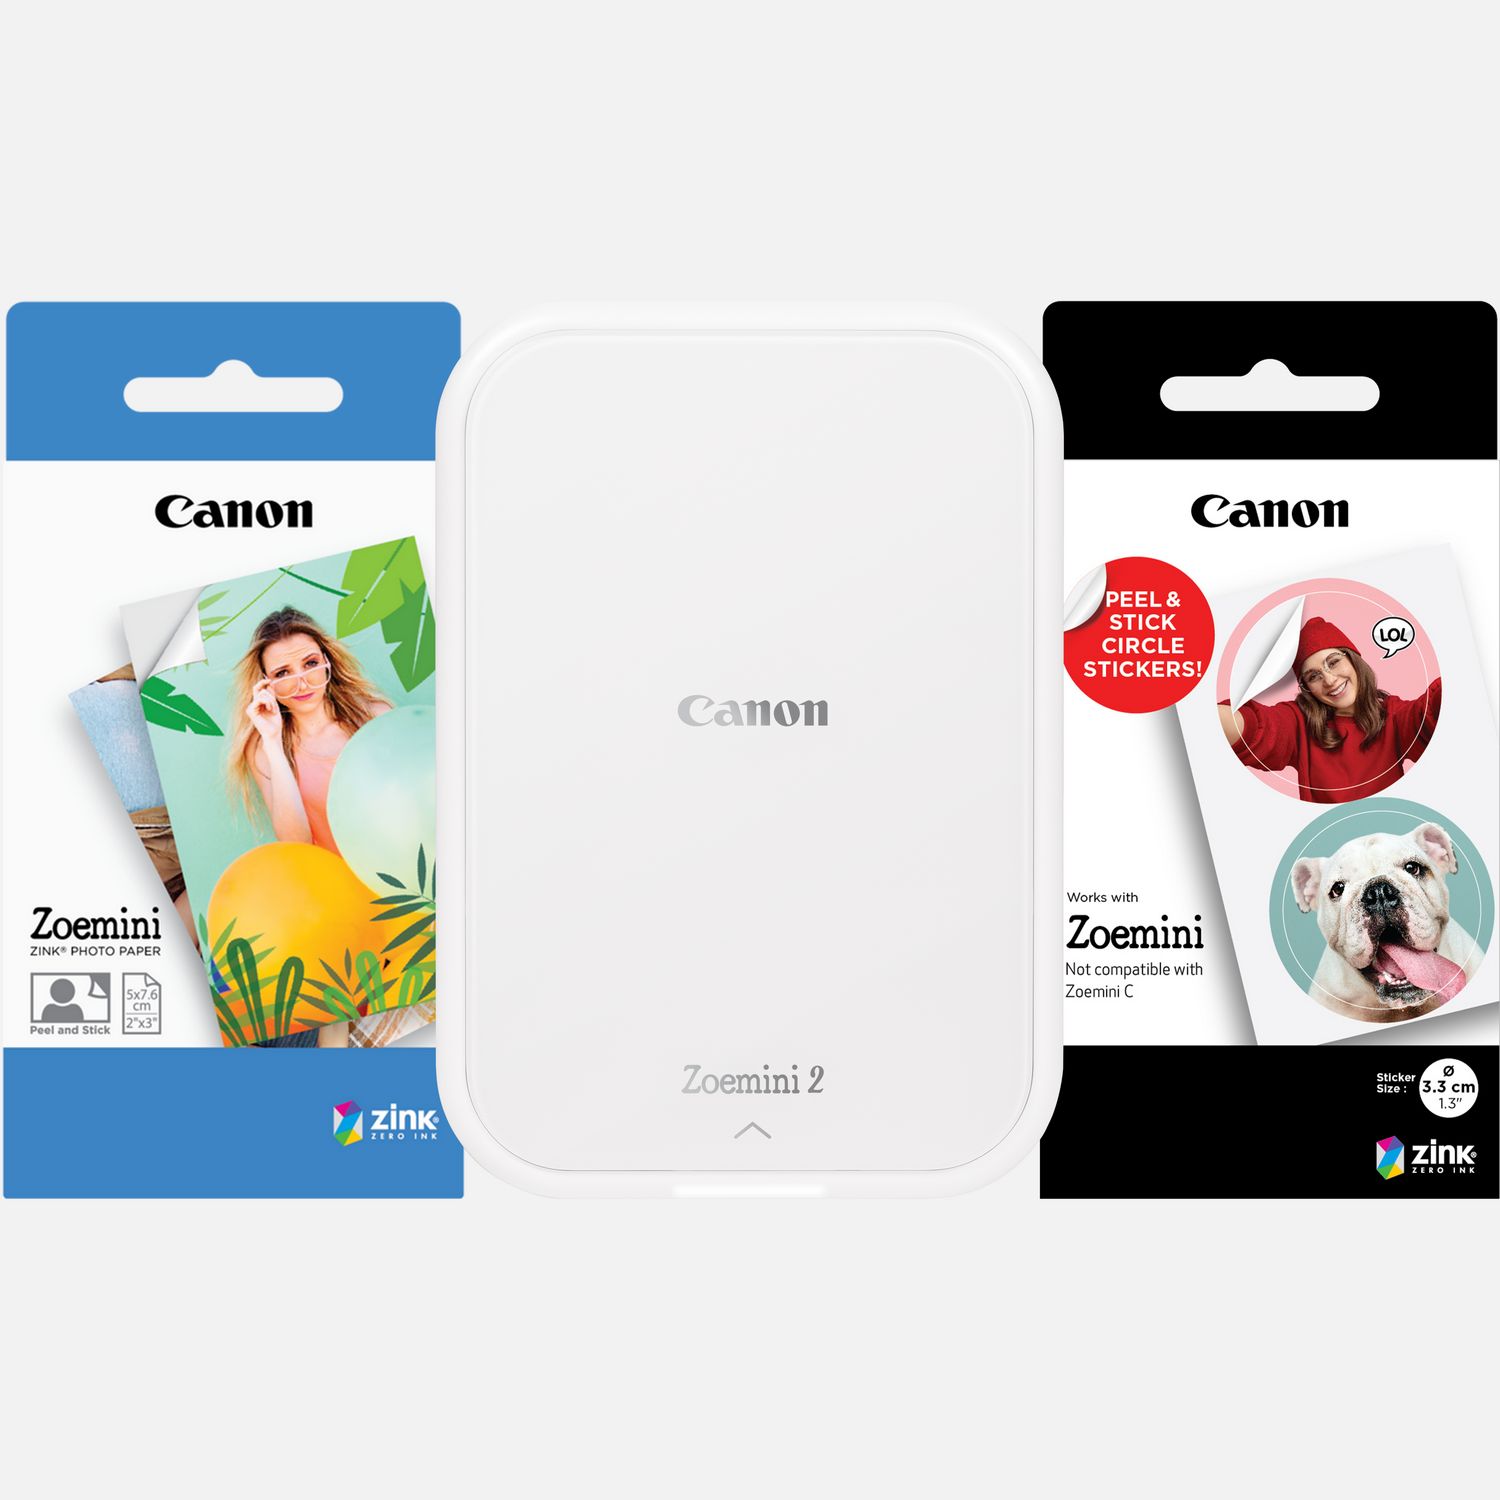 Image of Stampante fotografica portatile a colori Canon Zoemini 2, bianco + Carta fotografica ZINK™ 5 x 7,6 cm (20 fogli) + Carta adesiva circolare ZINK™ 3,3 cm (10 fogli)